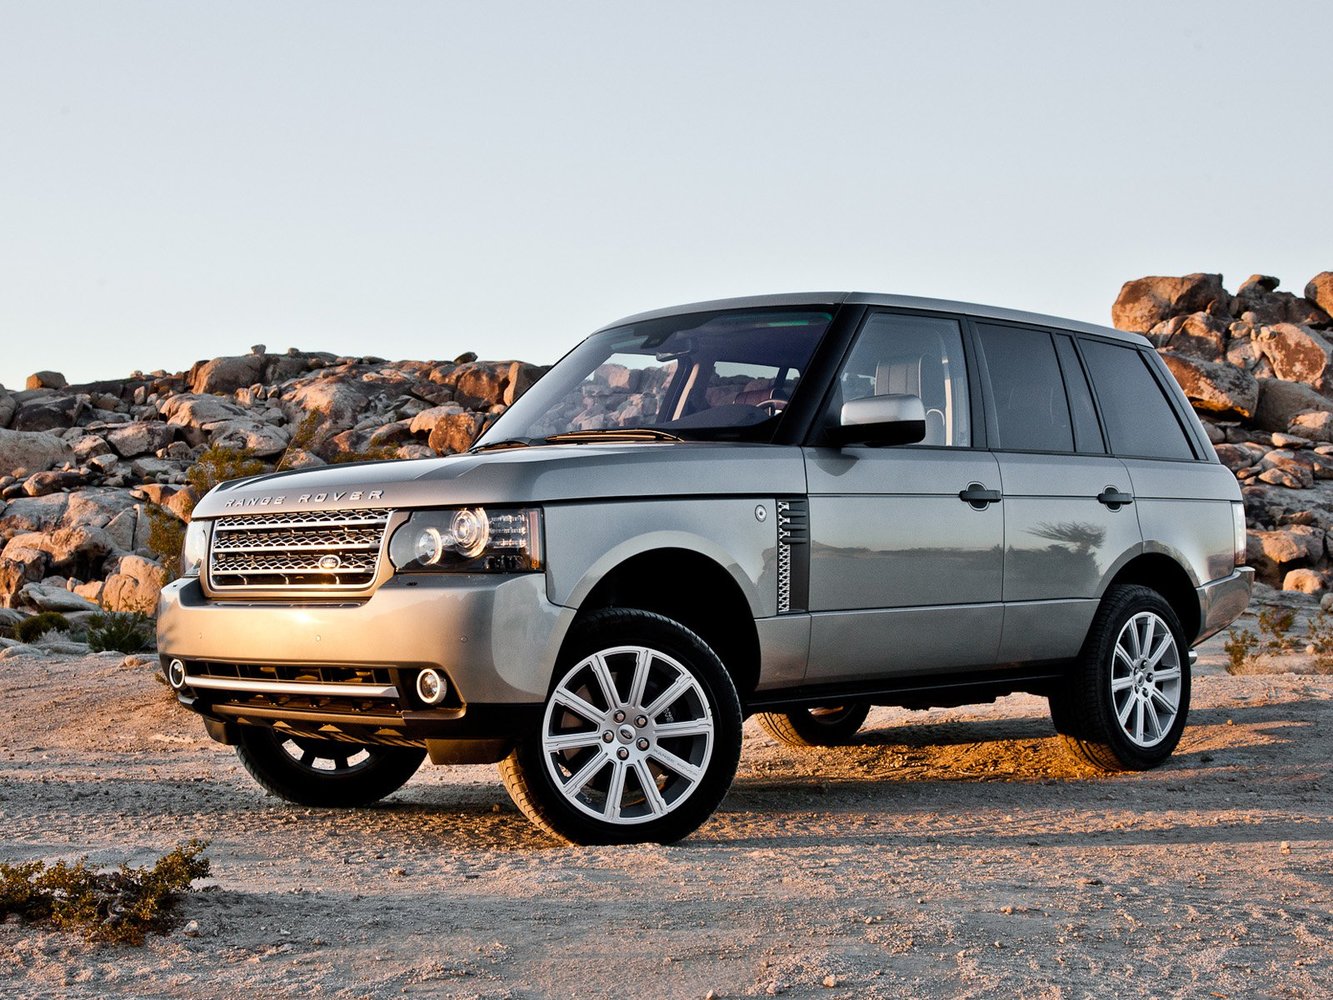 Land Rover Range Rover 2009 - 2012